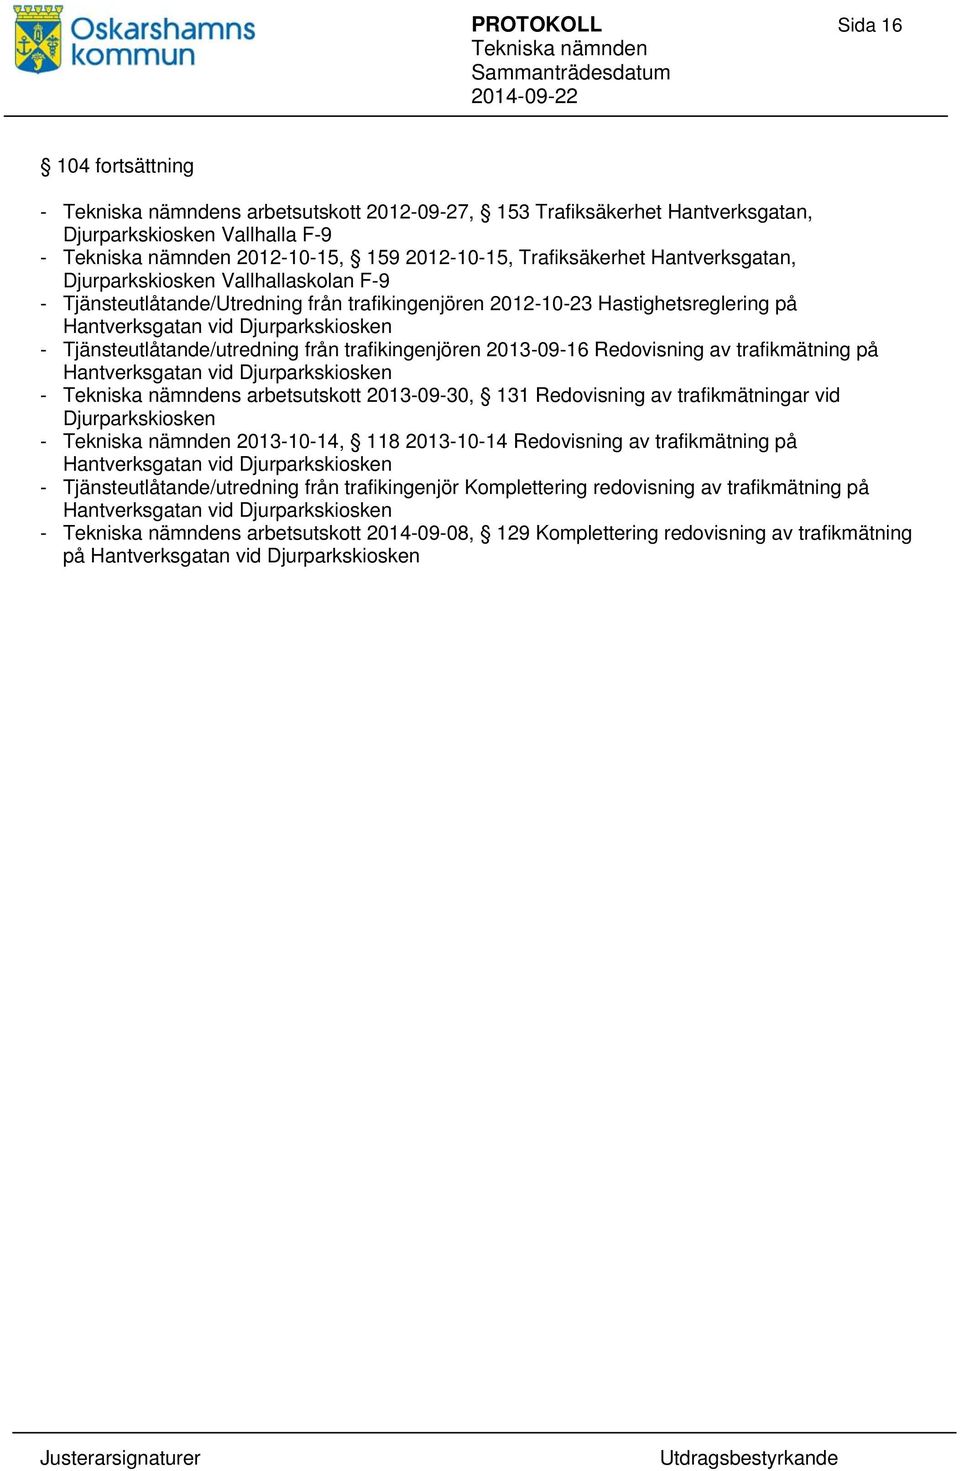 trafikingenjören 2013-09-16 Redovisning av trafikmätning på Hantverksgatan vid Djurparkskiosken - s arbetsutskott 2013-09-30, 131 Redovisning av trafikmätningar vid Djurparkskiosken - 2013-10-14, 118